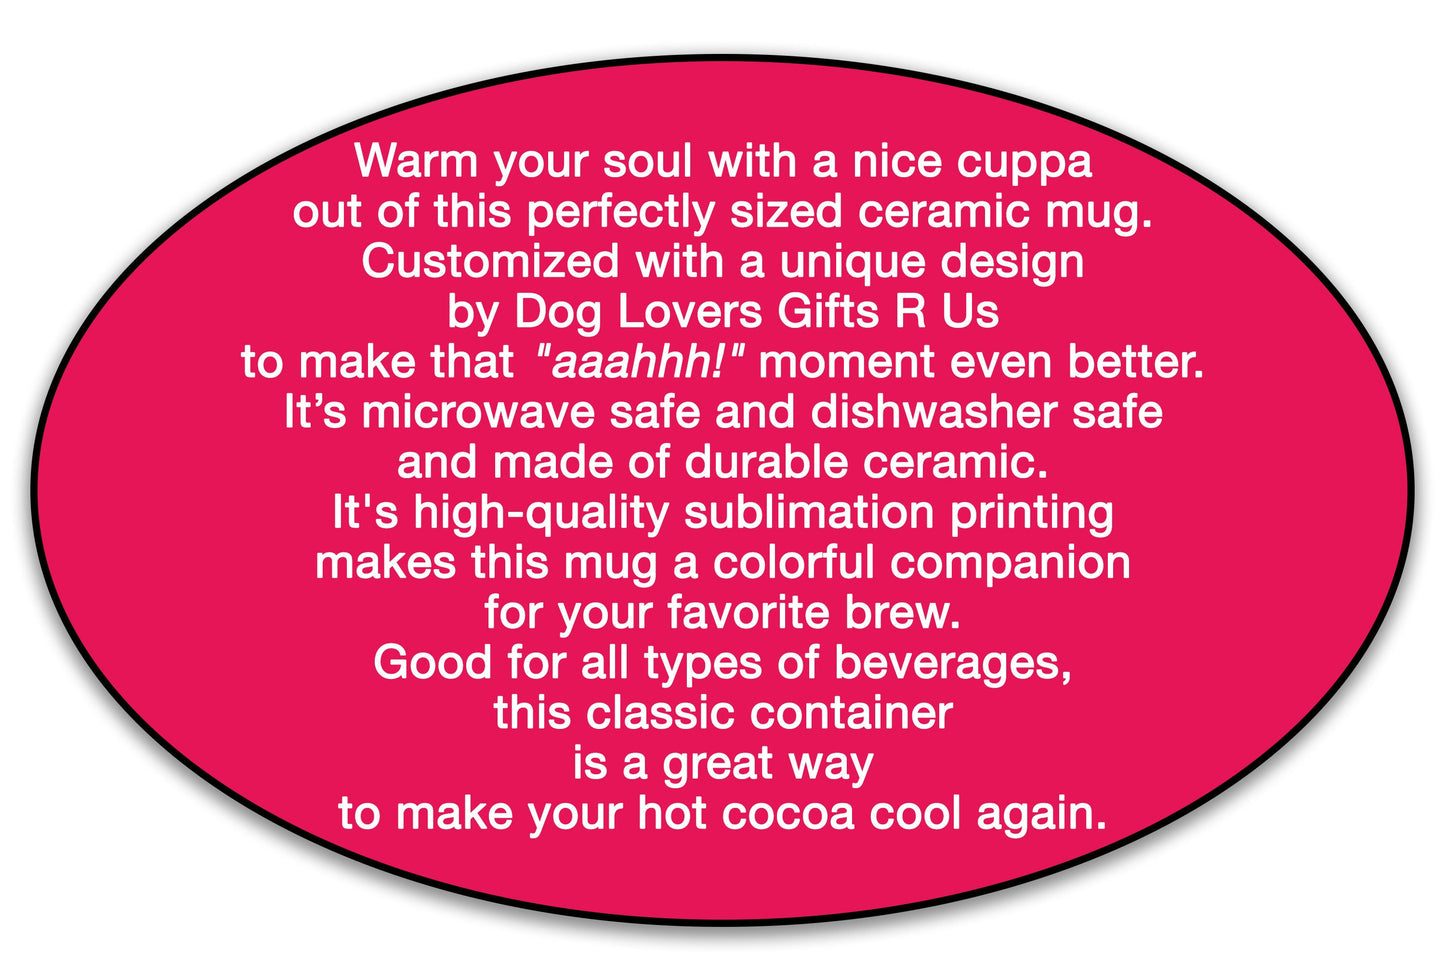 Maltipoo Kisses Dog Coffee Mug, Maltese Poodle Mom Mug Valentine Gift, Dog Lover Mug, Maltipoo Dog Dad Mug Valentines Day Gift Valentine Mug